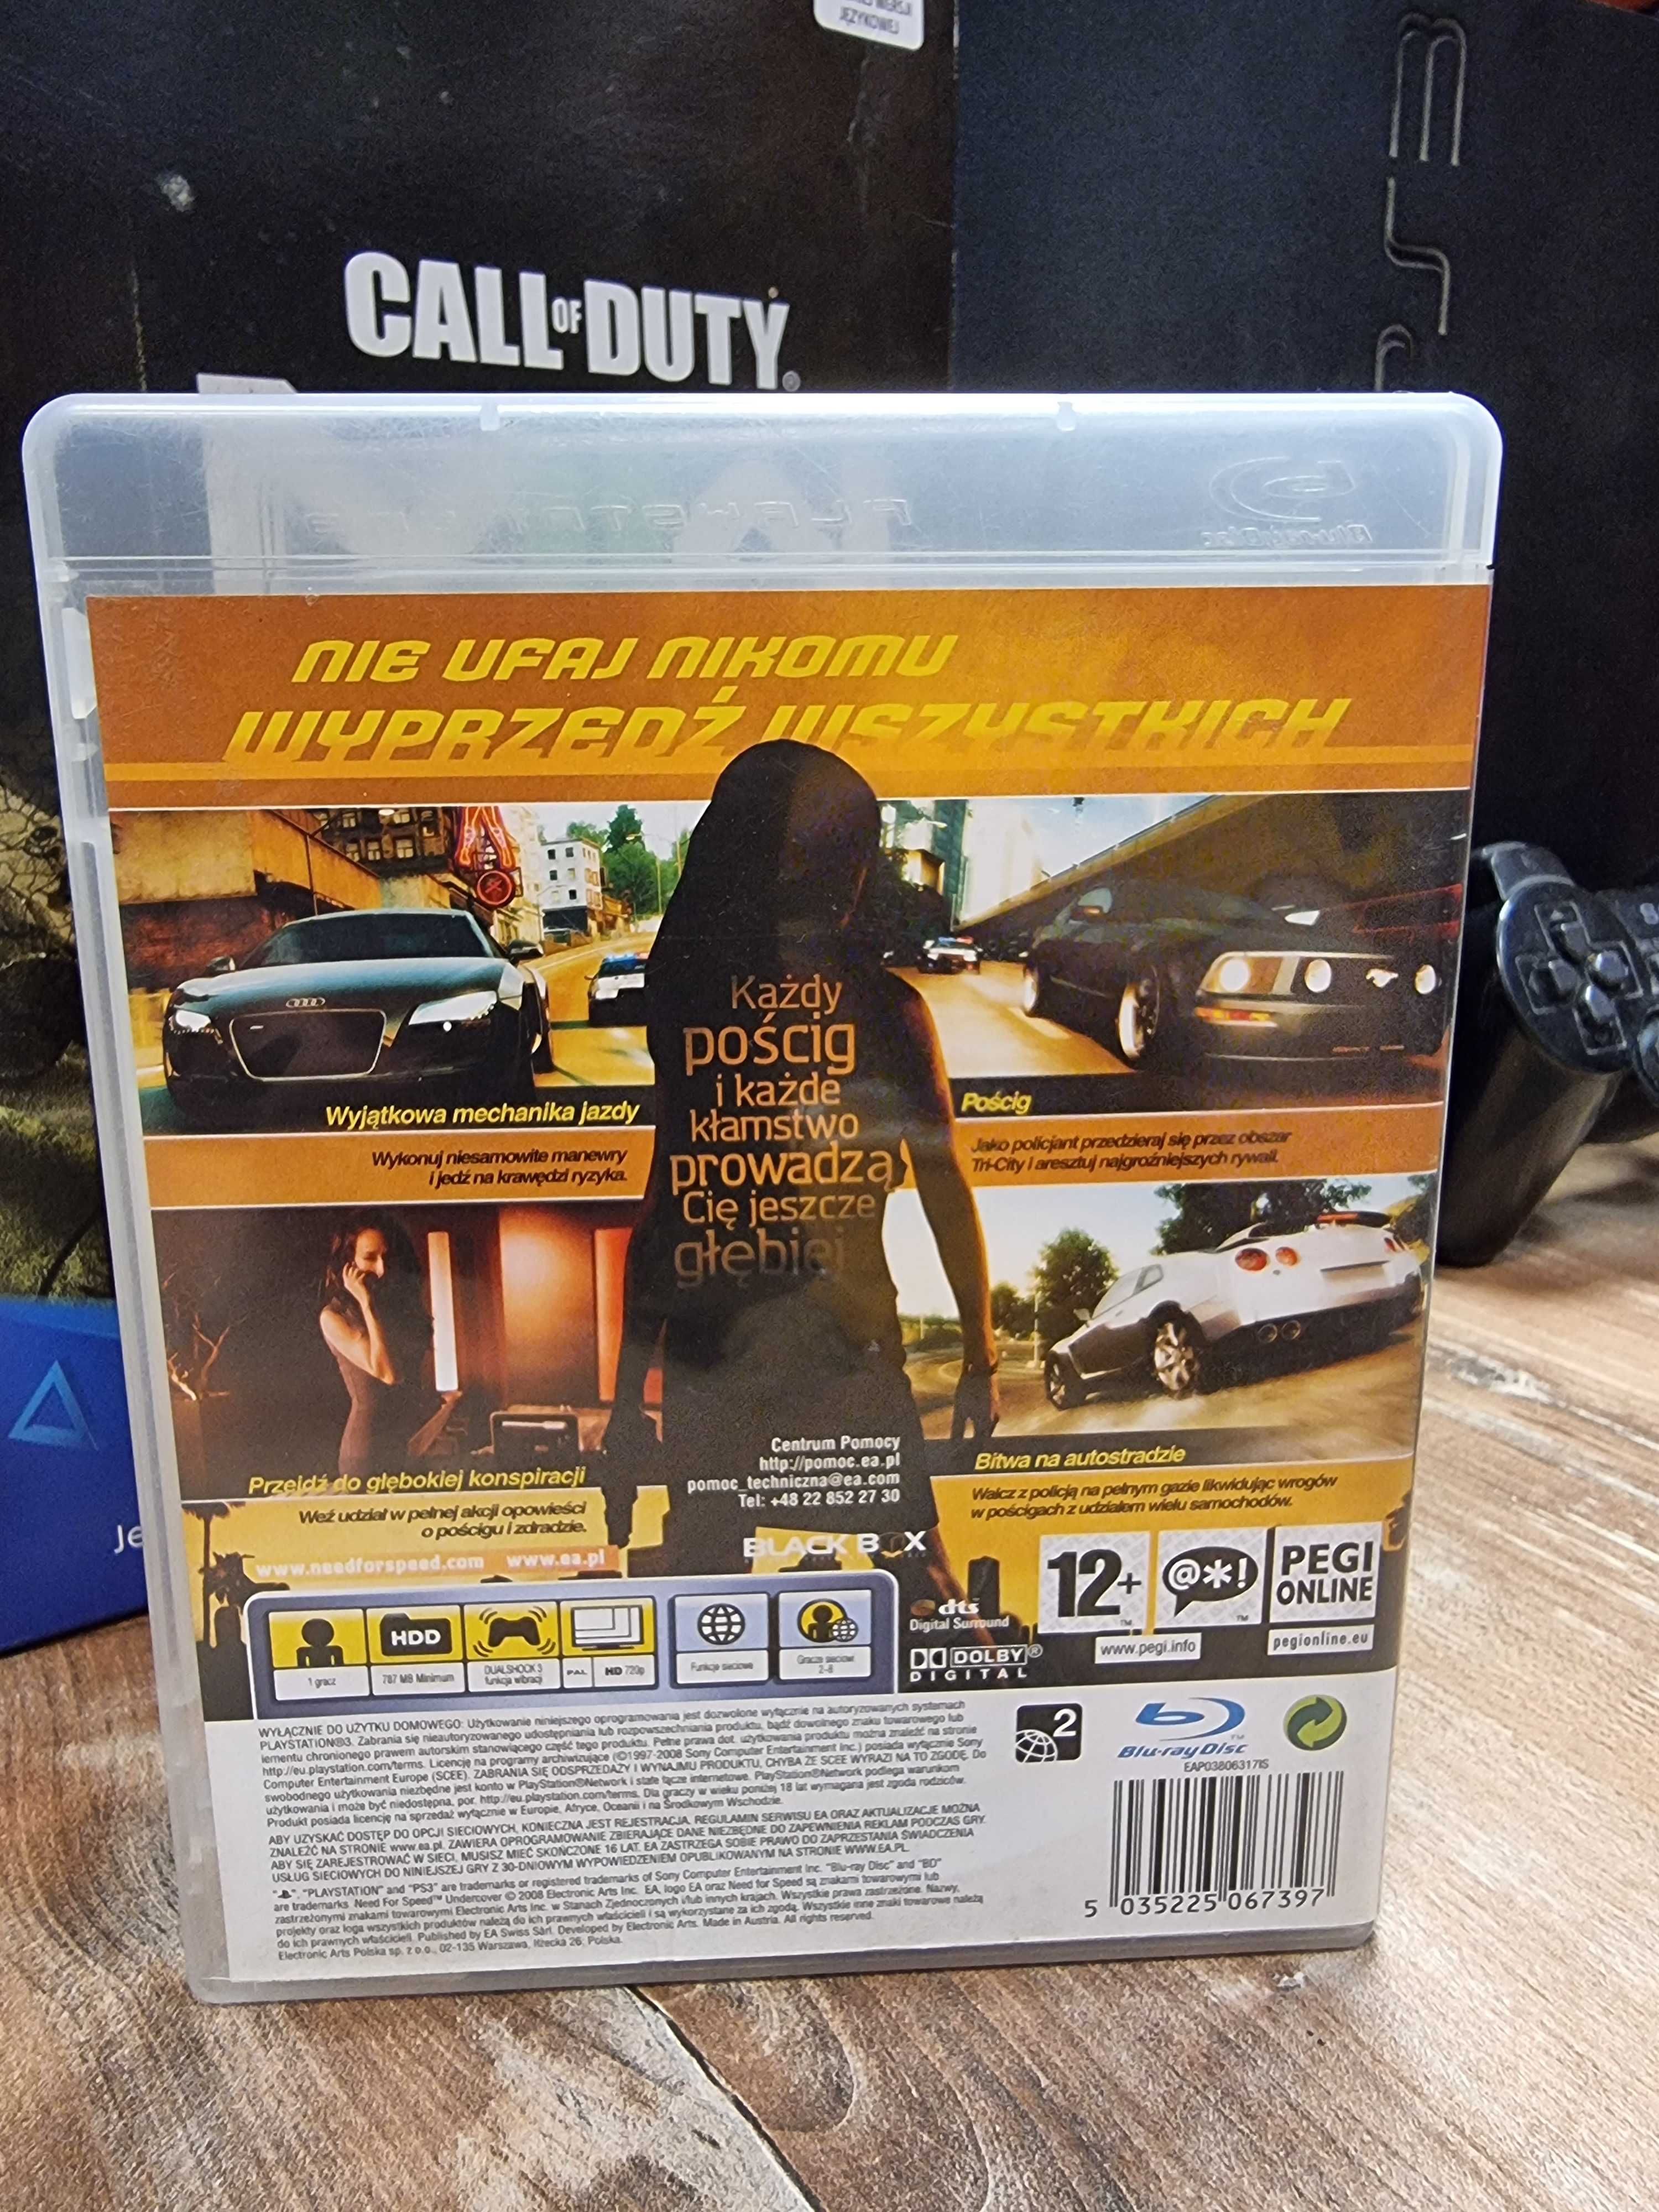 Need for Speed: Undercover PS3 Sklep Wysyłka Wymiana